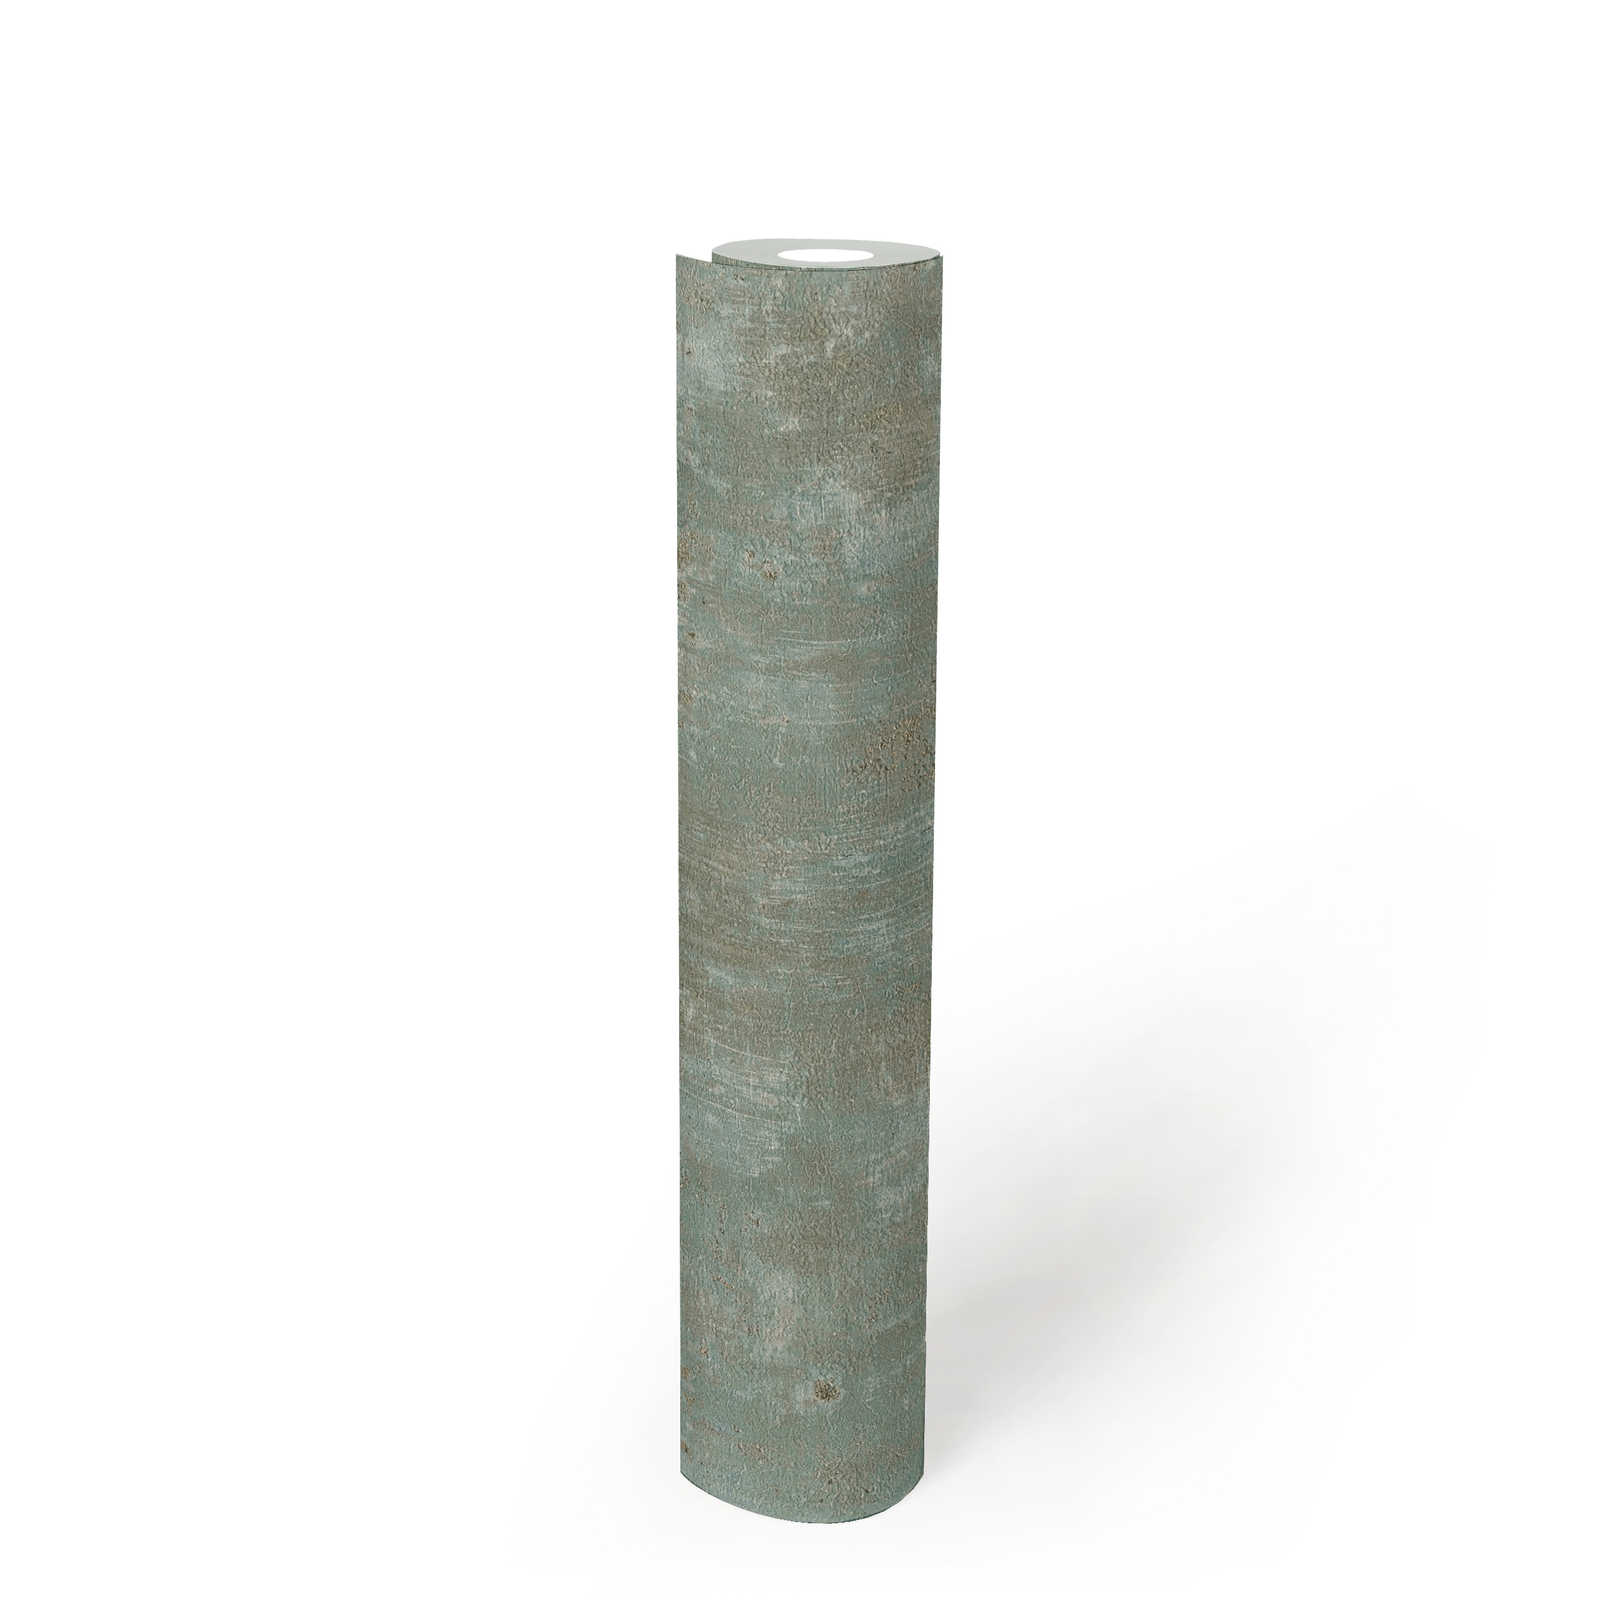             papier peint en papier intissé aspect rouille avec accents - vert, bleu, or
        